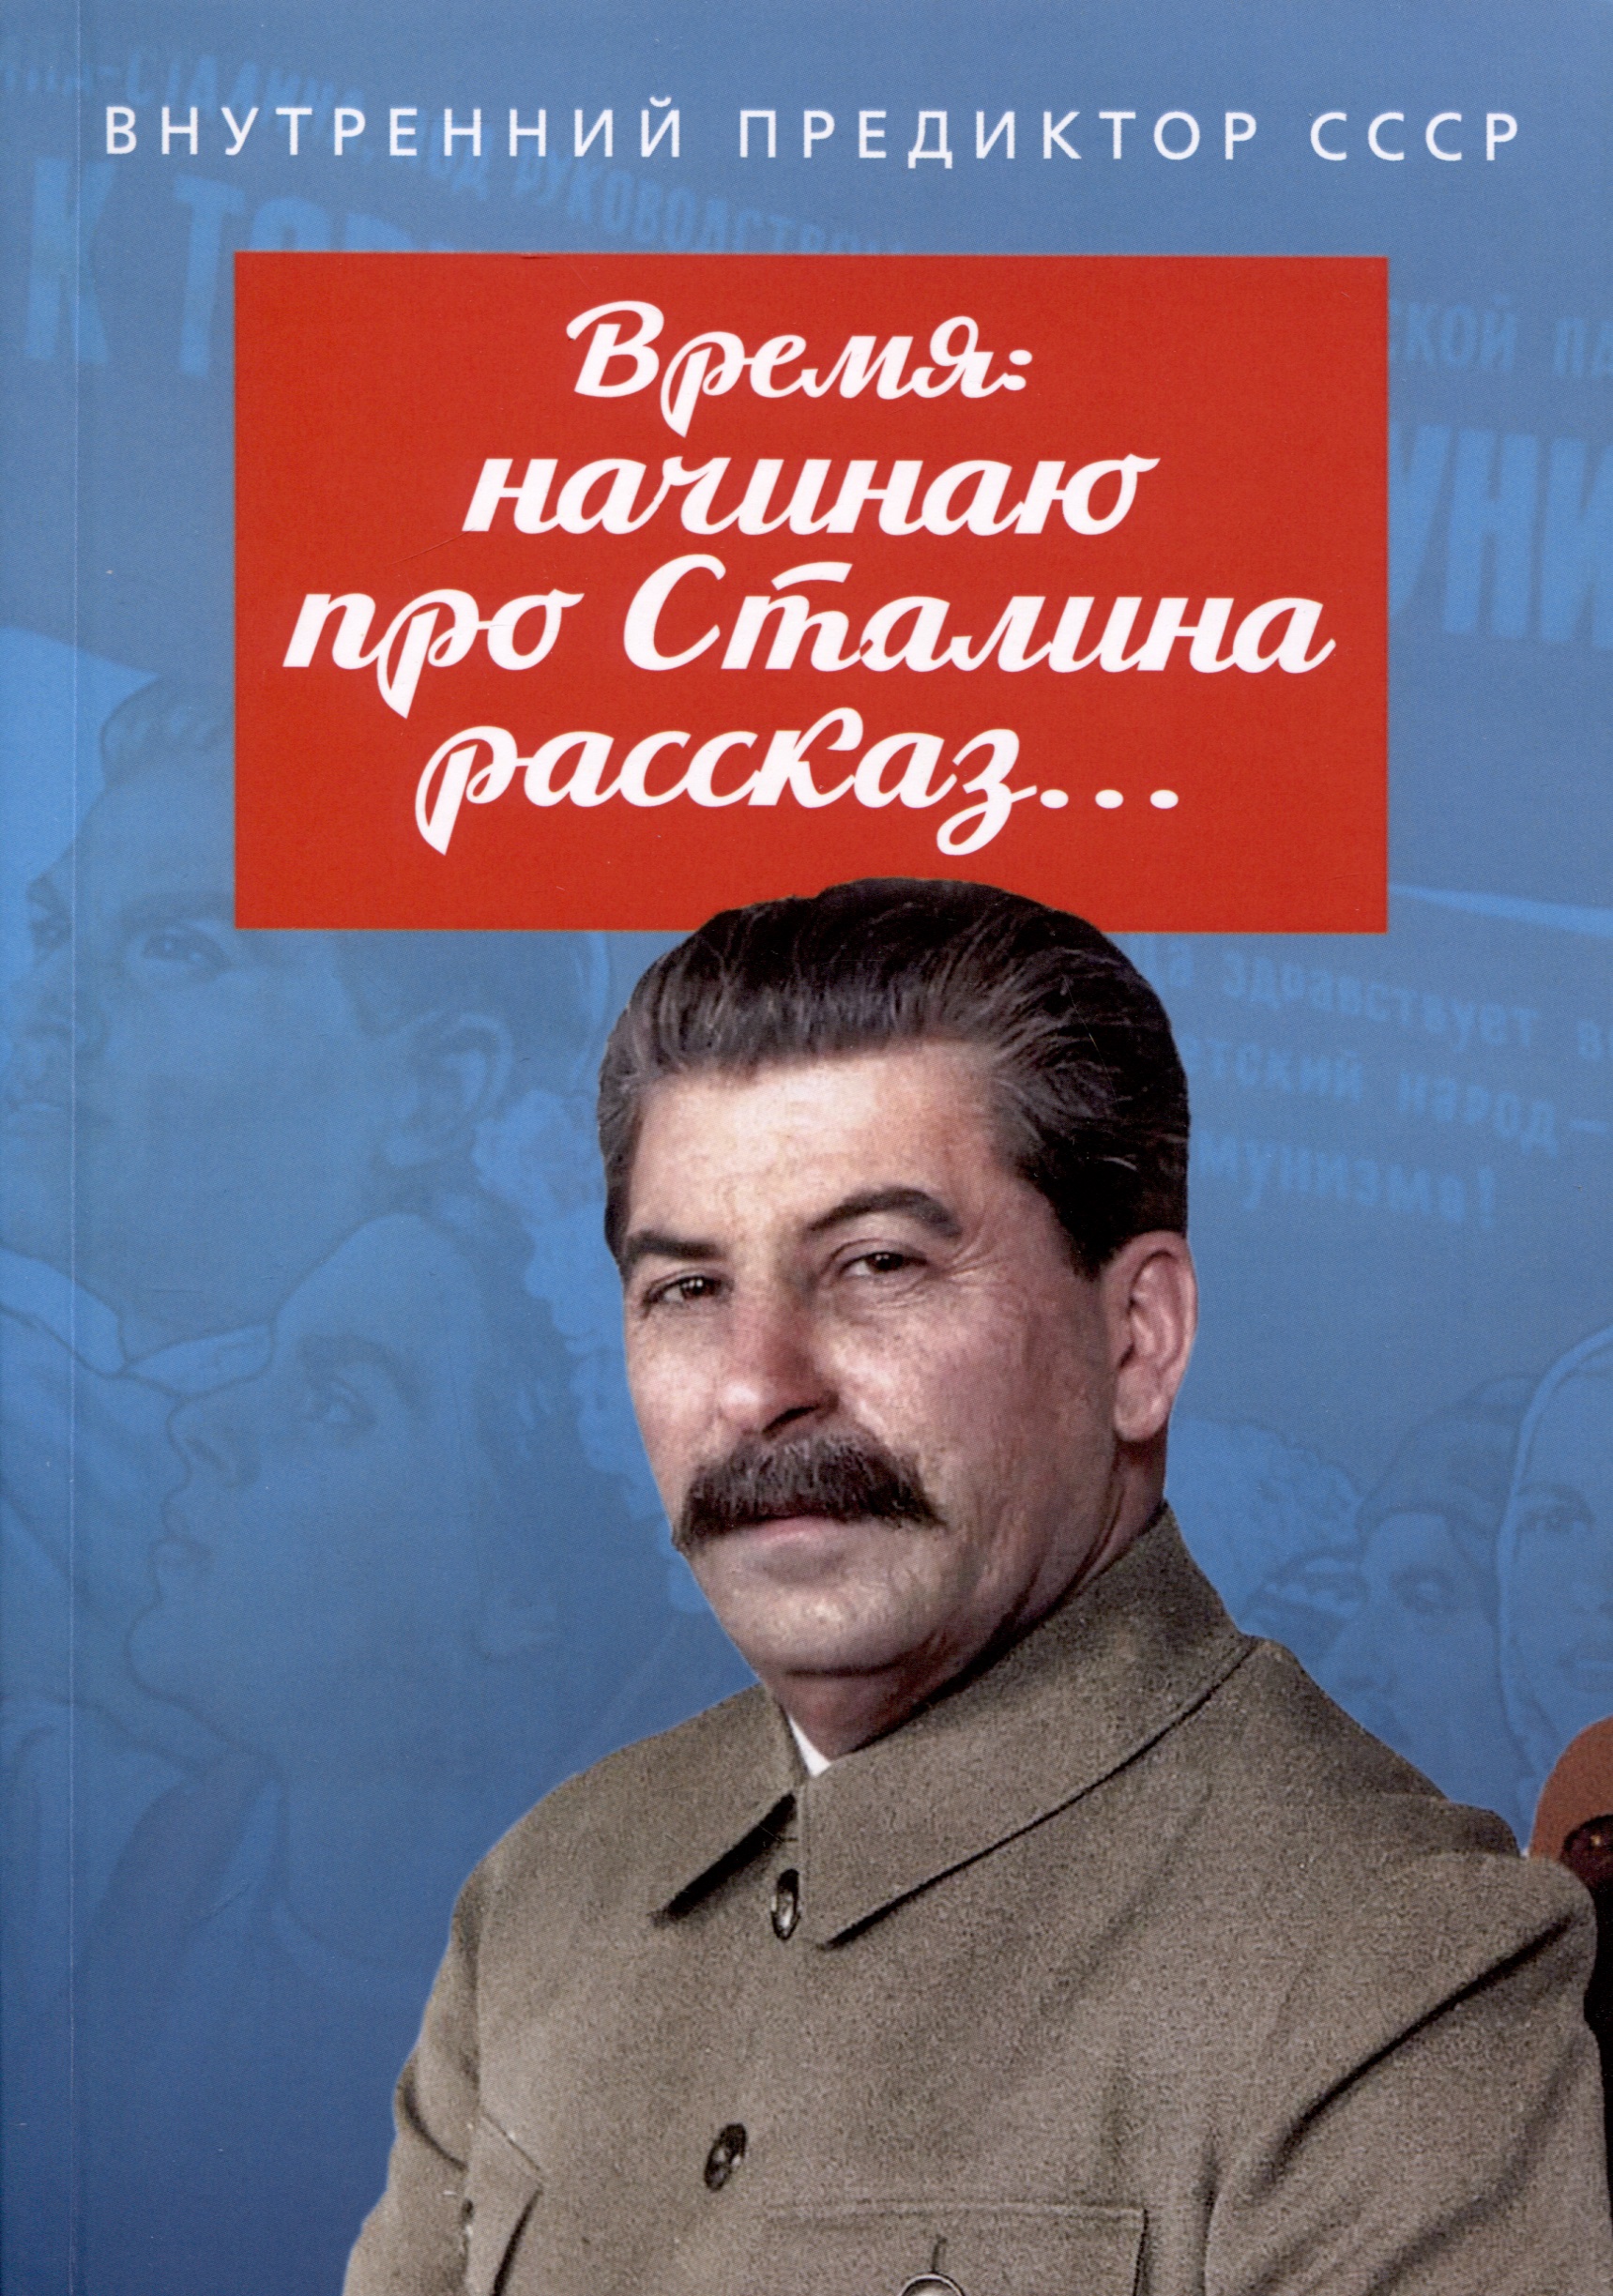 Внутренний Предиктор СССР Время: начинаю про Сталина рассказ…